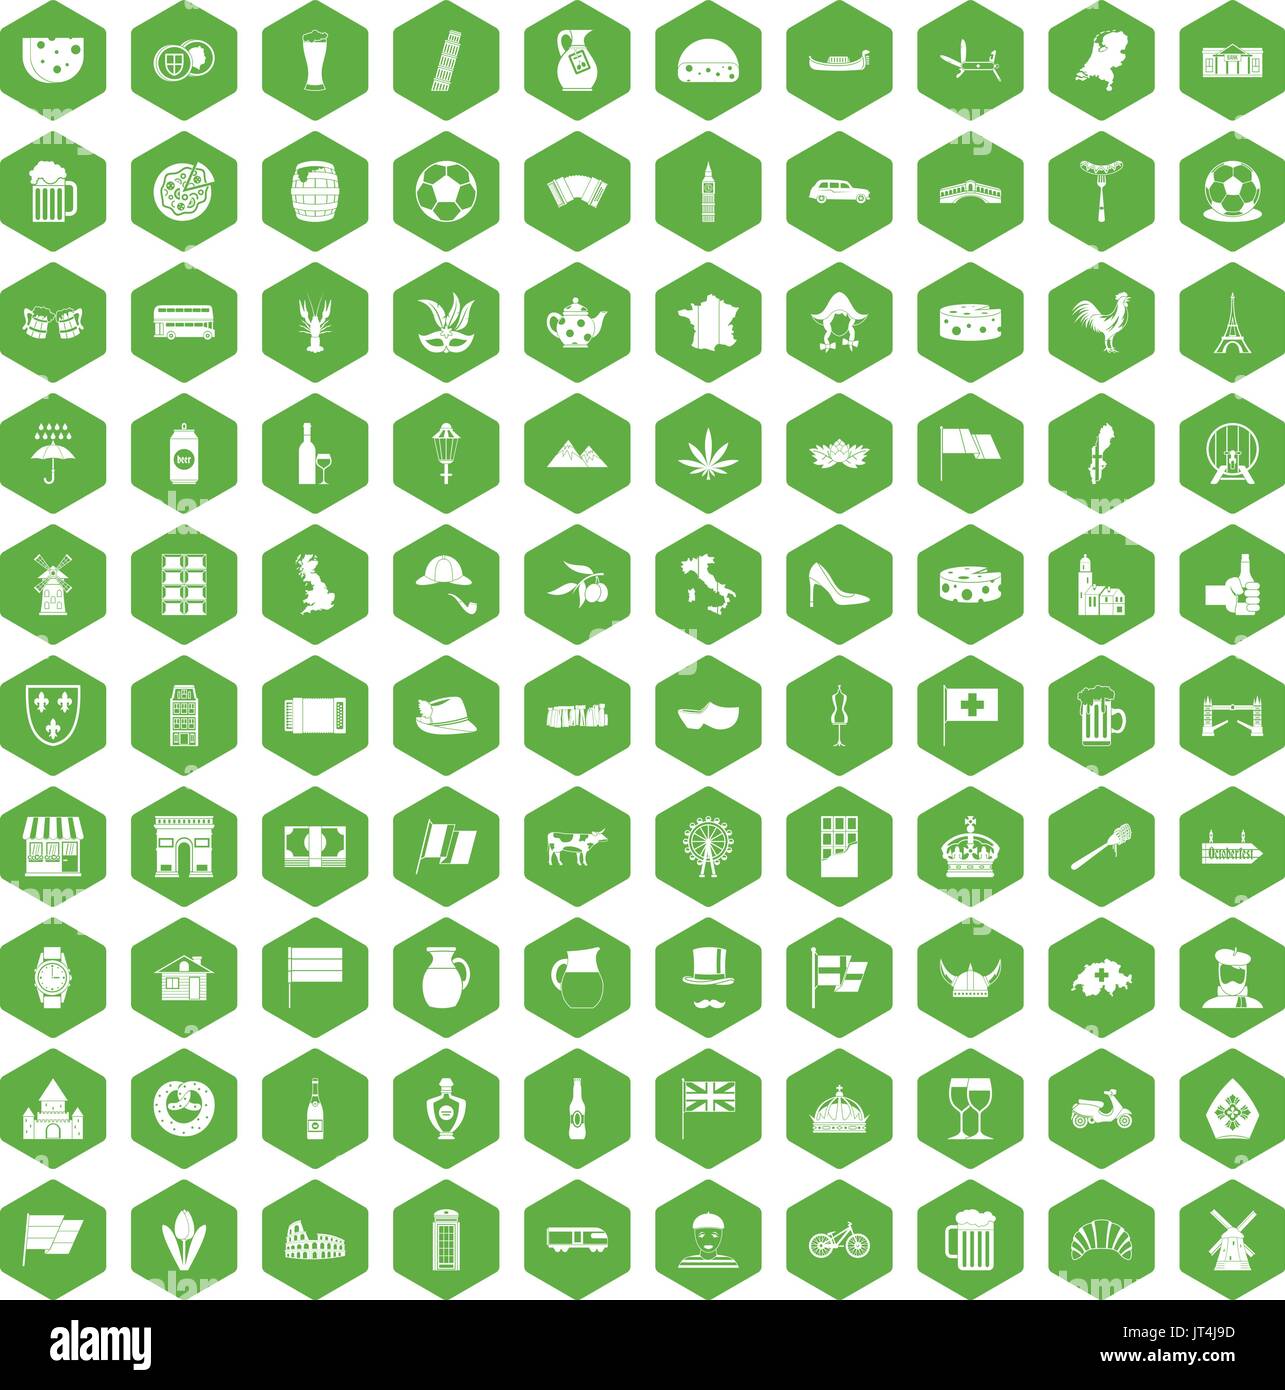 100 europe countries icons hexagon green Stock Vector